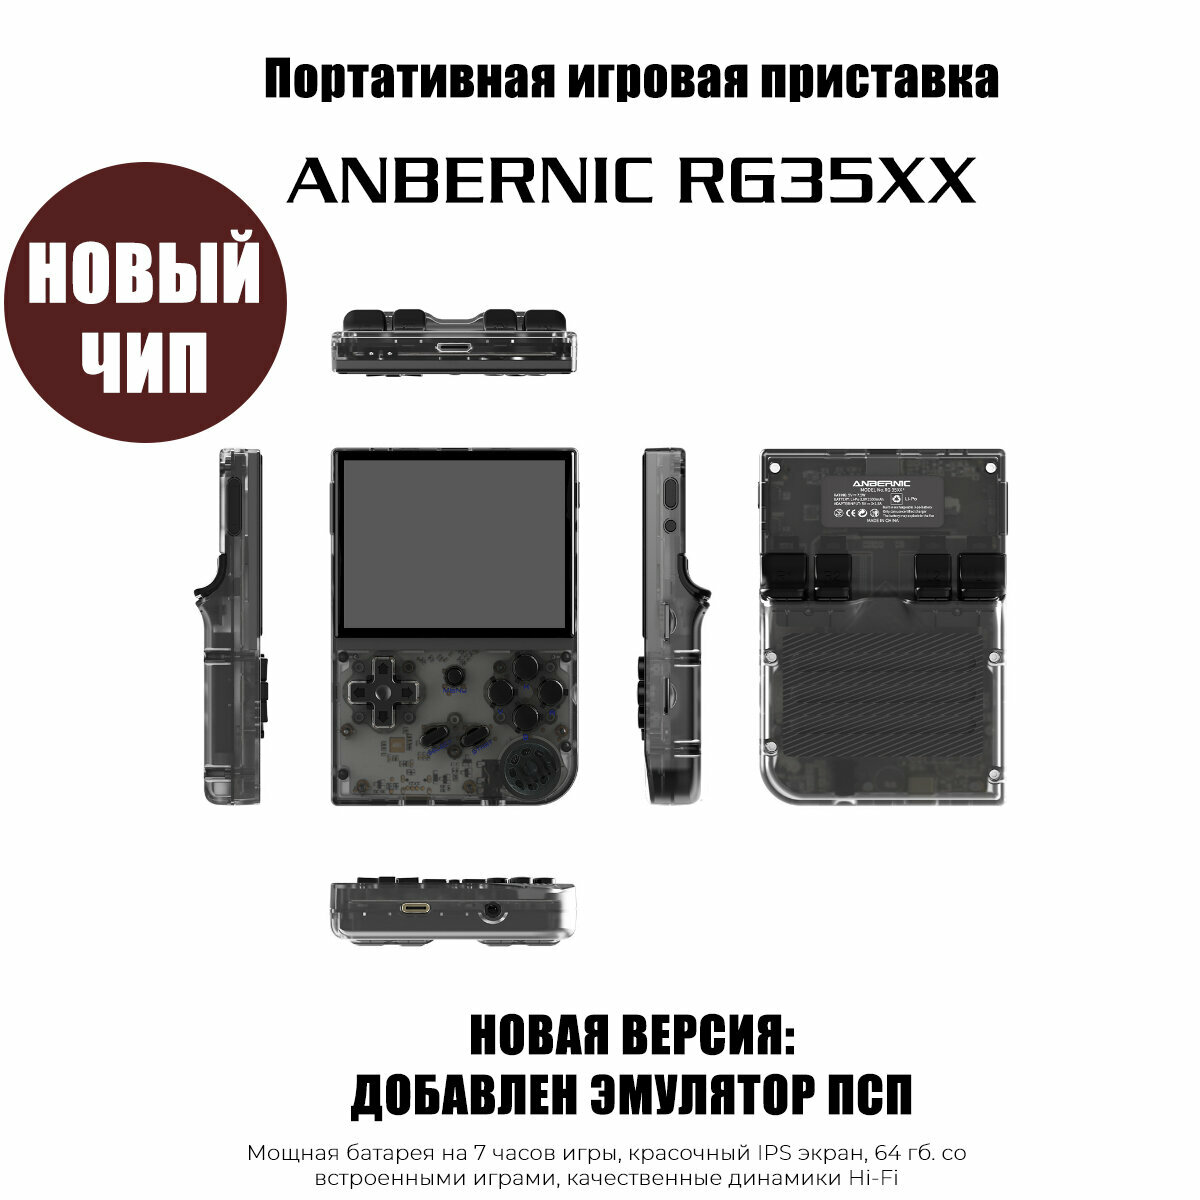 Портативная игровая консоль Anbernic RG35XX (новая версия) 64 Гб 5000 игр, 64 Гб, черный